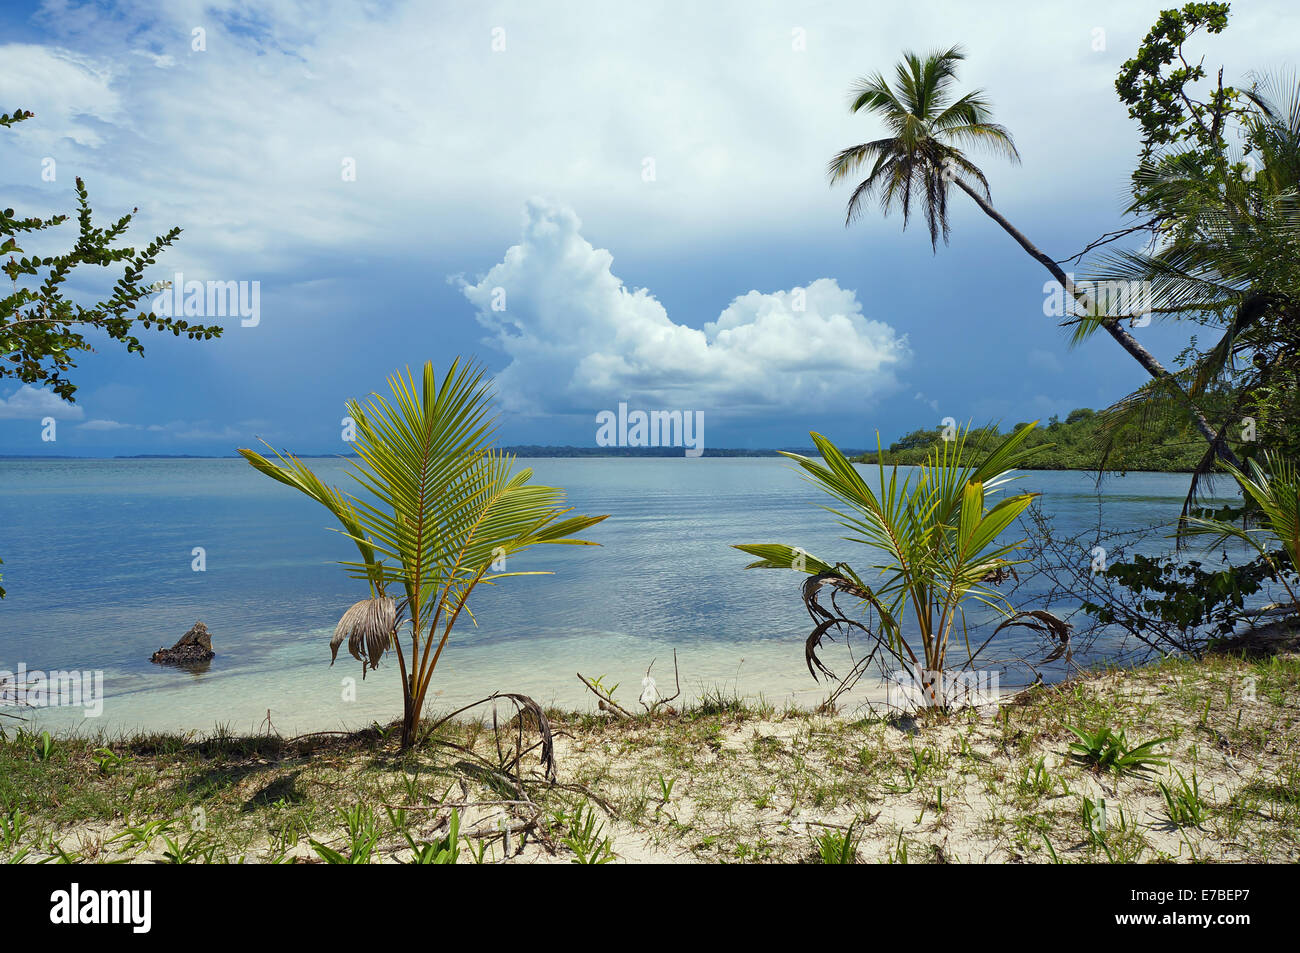 Calma costa tropicale con palme da cocco e il cloud all'orizzonte, il mare dei Caraibi, isola Bastimentos, Bocas del Toro, Panama Foto Stock